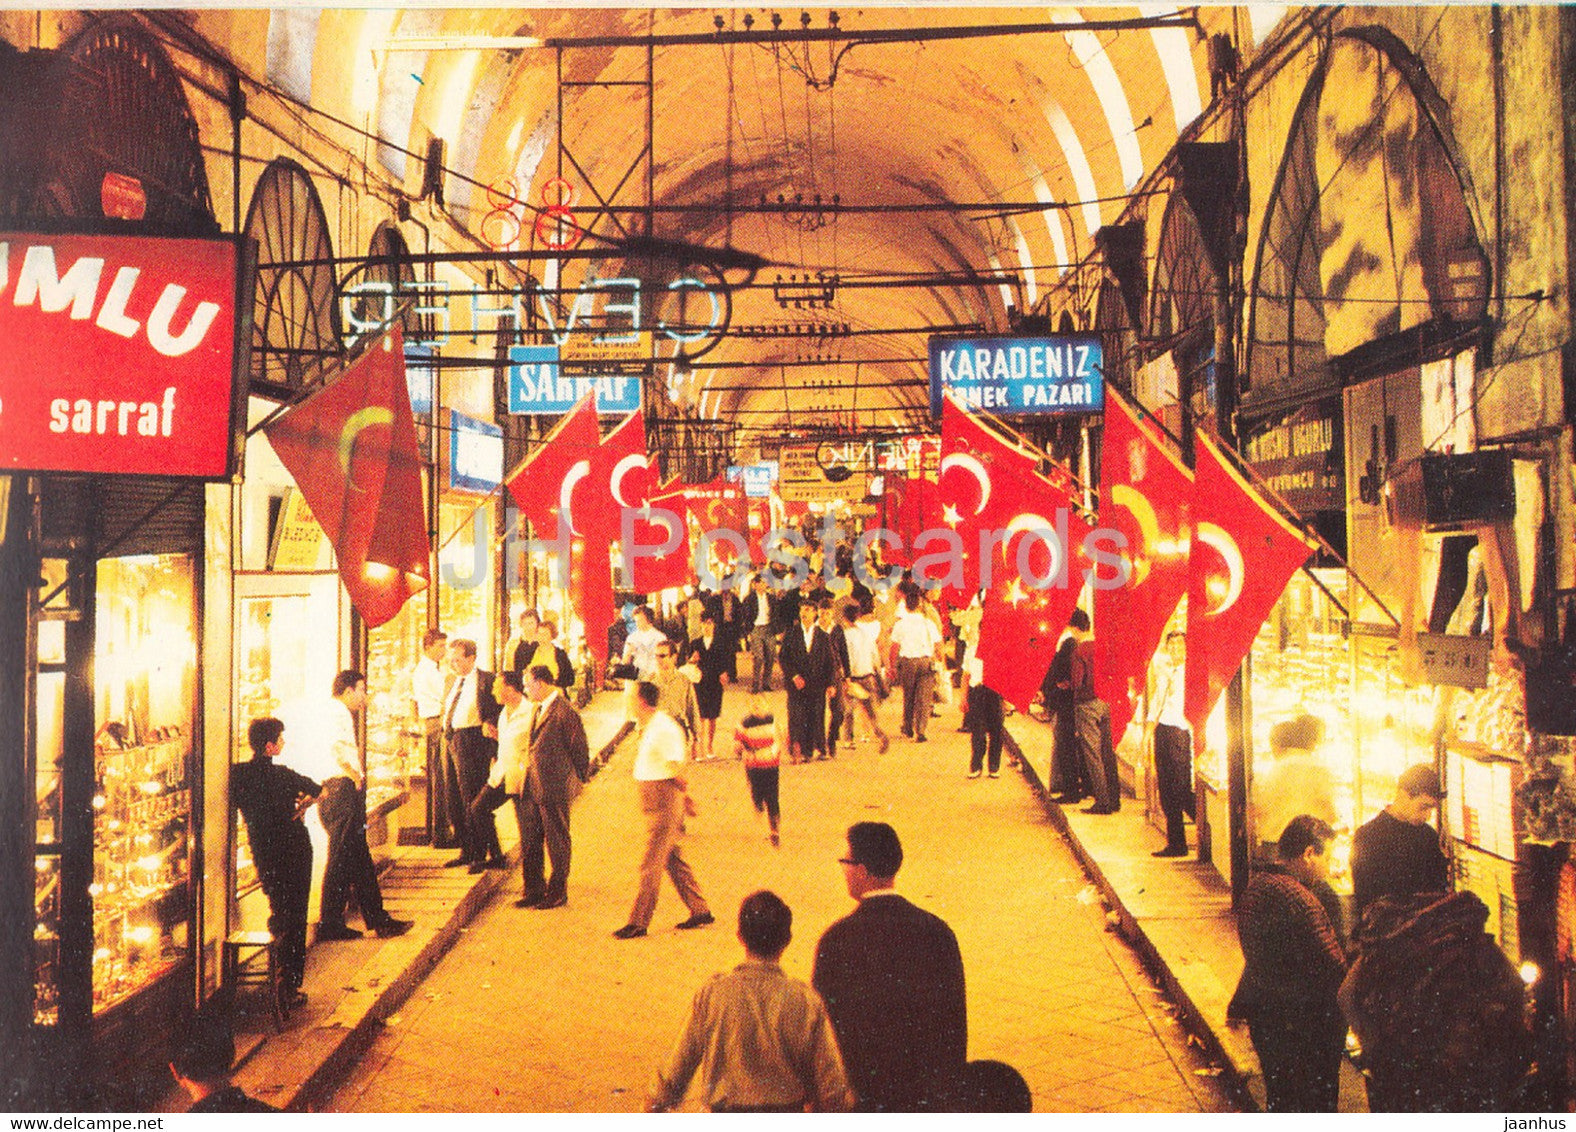 Istanbul - The Covered Bazaar - market - Turkey - unused - JH Postcards